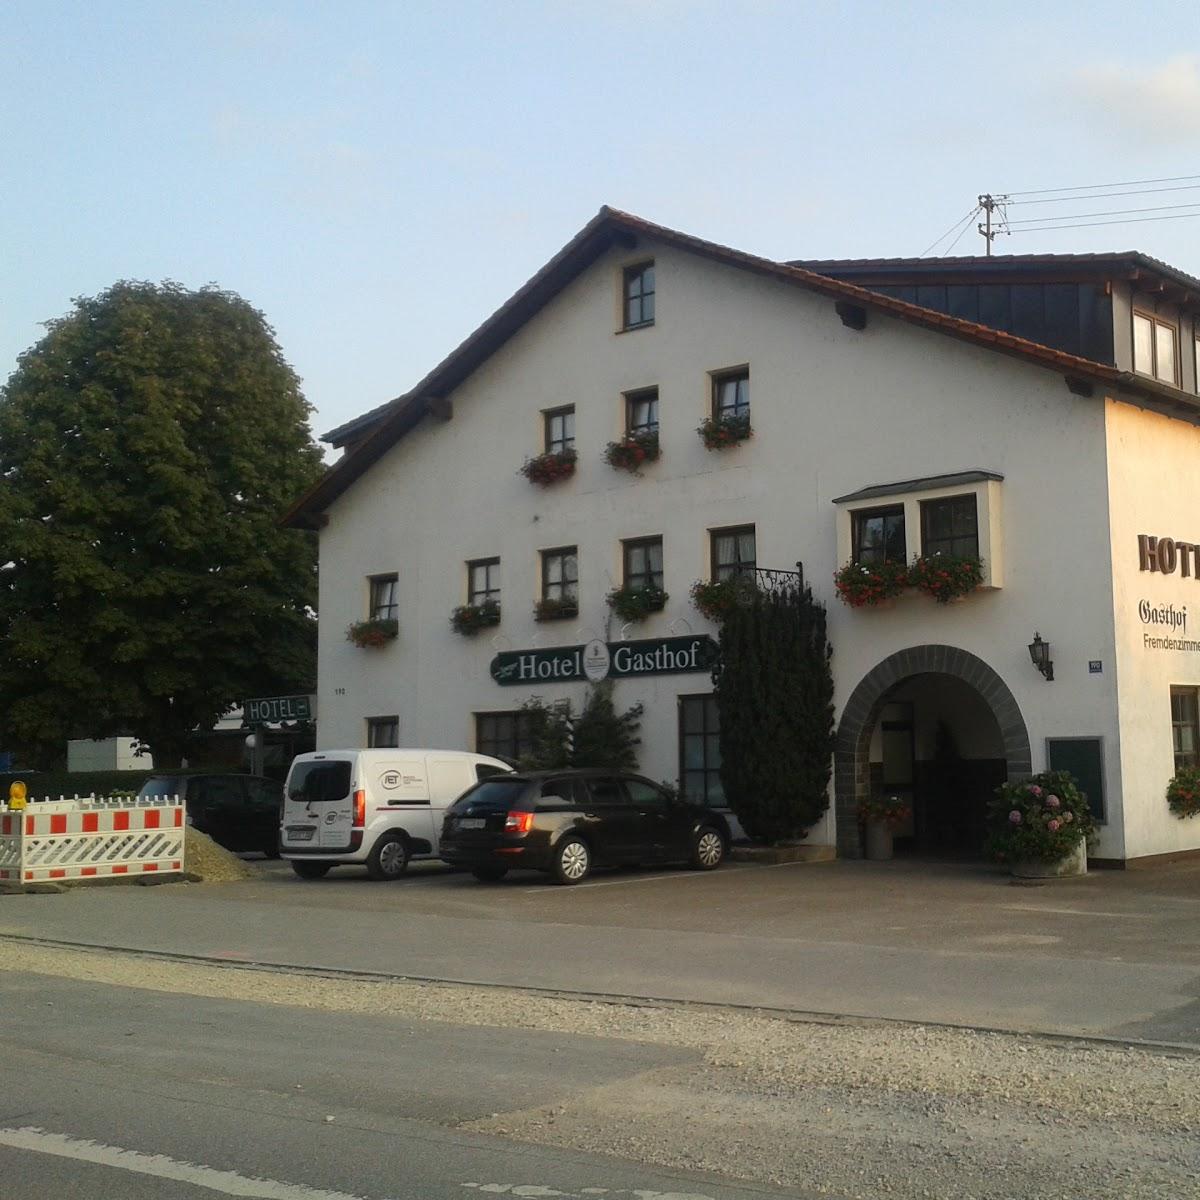 Restaurant "Hotel Sperger" in Kelheim